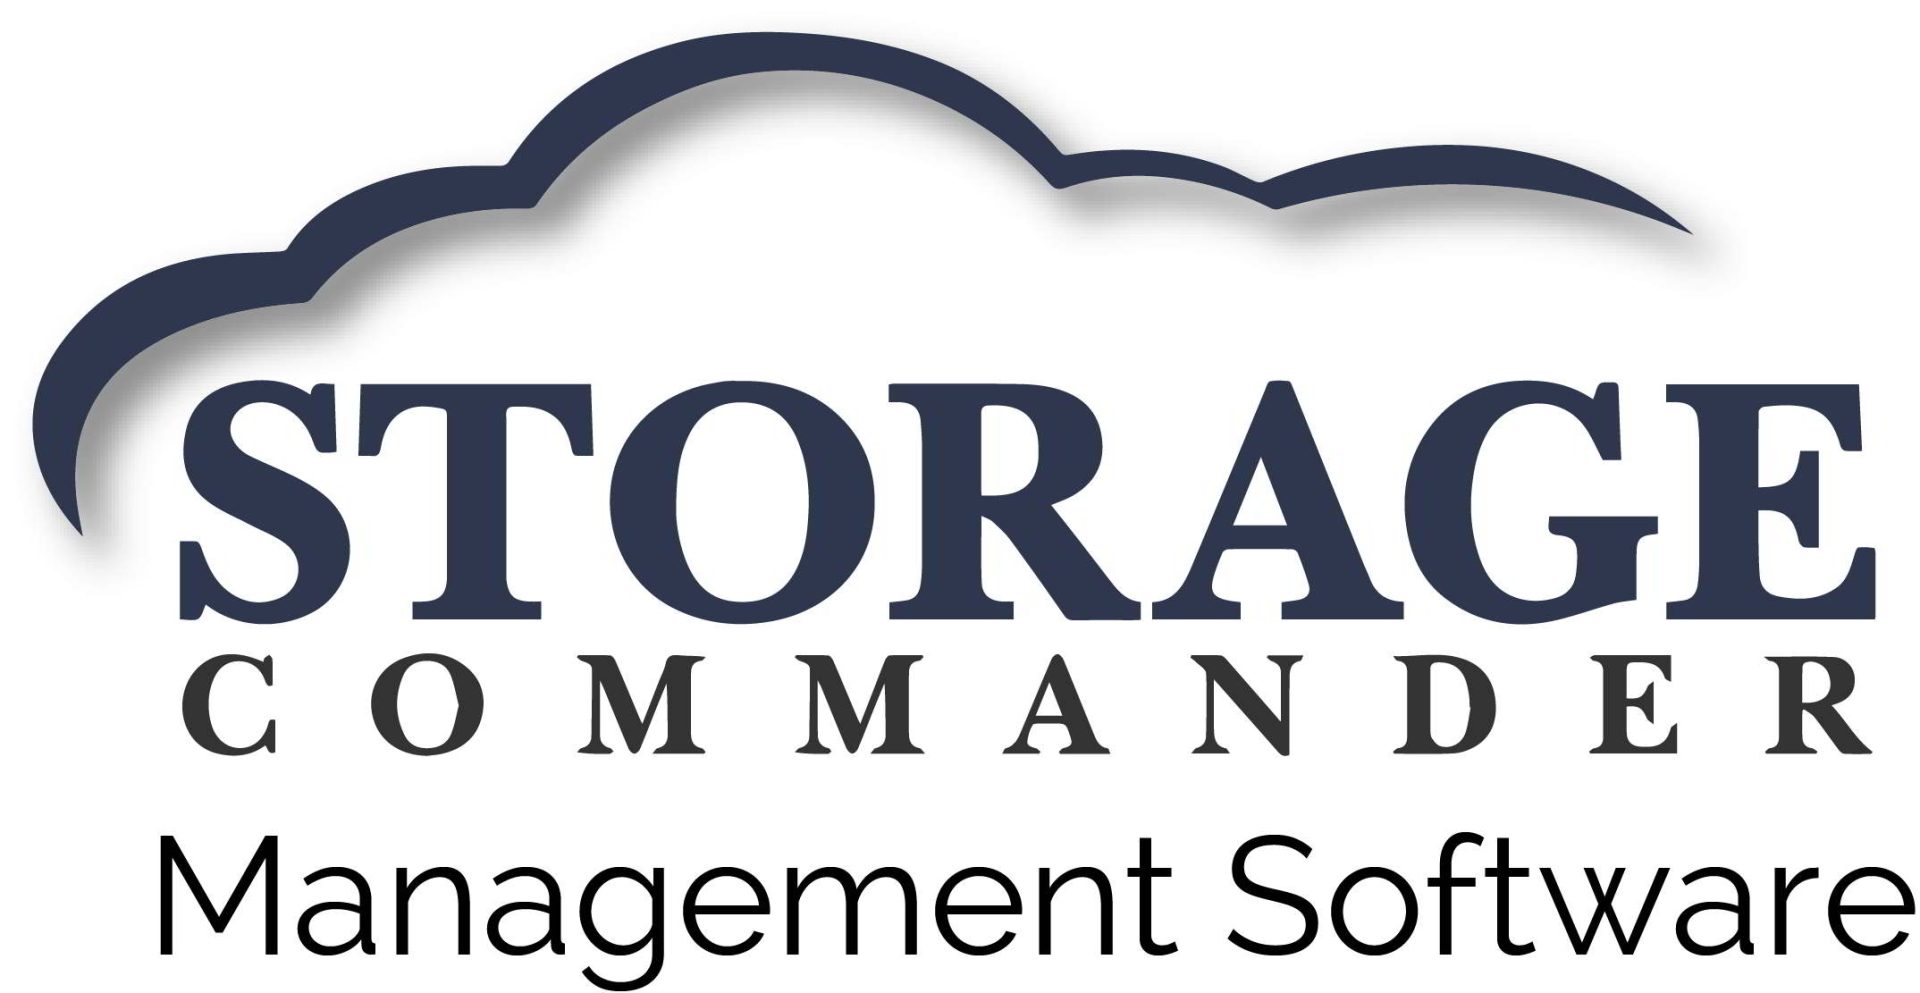 Storage Commander logo